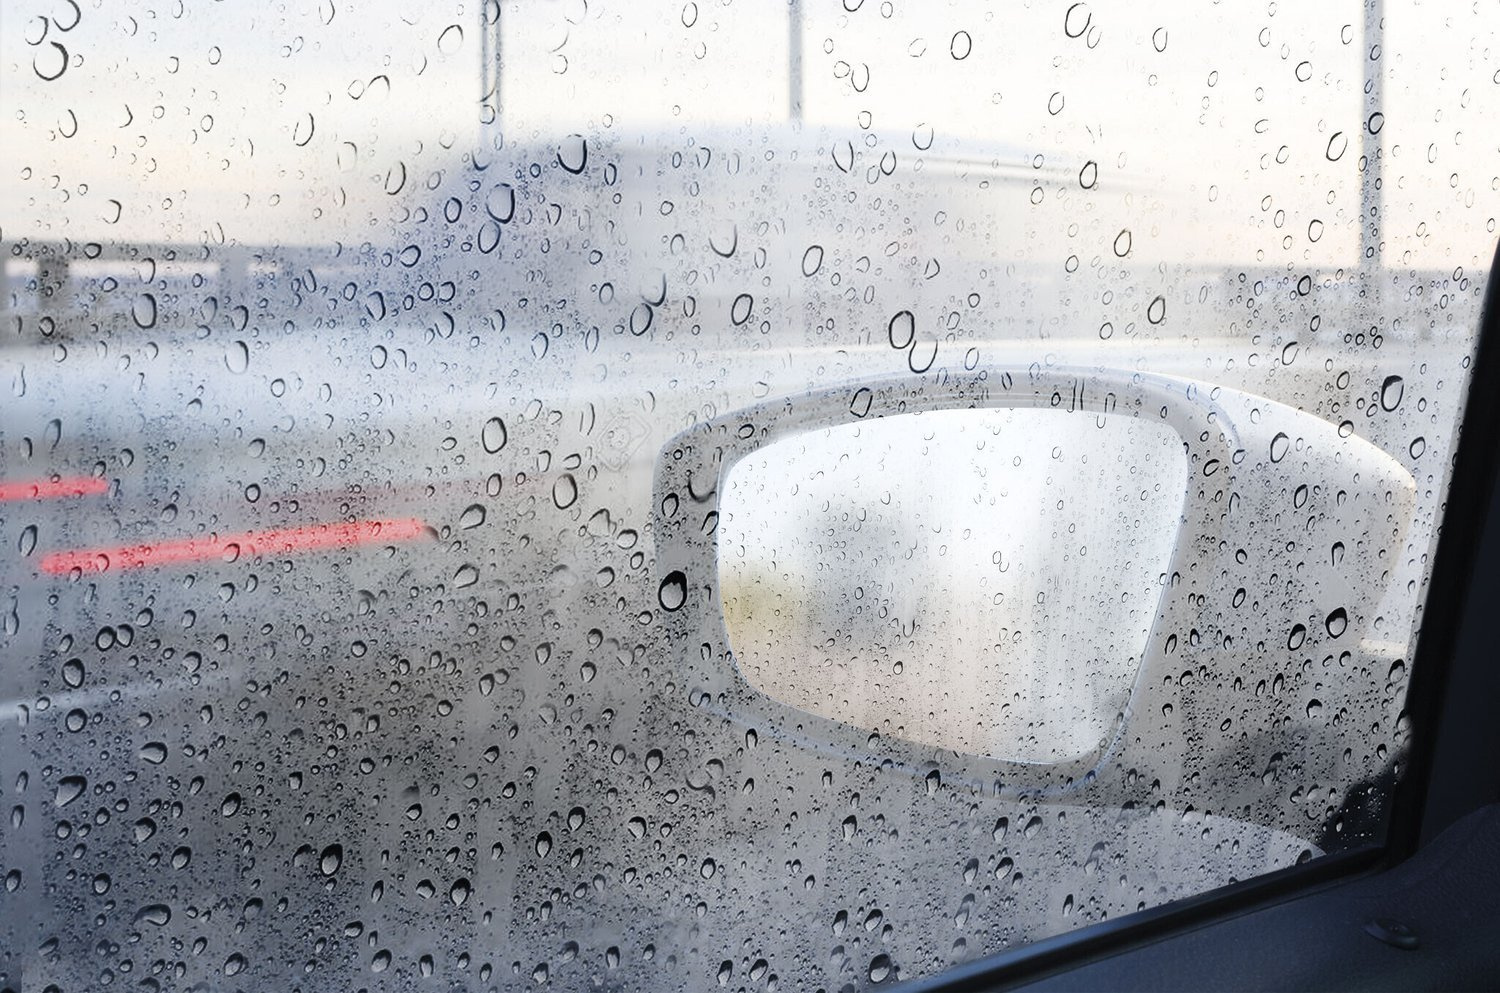 Auto-Rückspiegel, Regen-Augenbrauen-Abdeckung, Catering-Spiegel,  PVC-Kohlefaser-Muster, Regenschutz